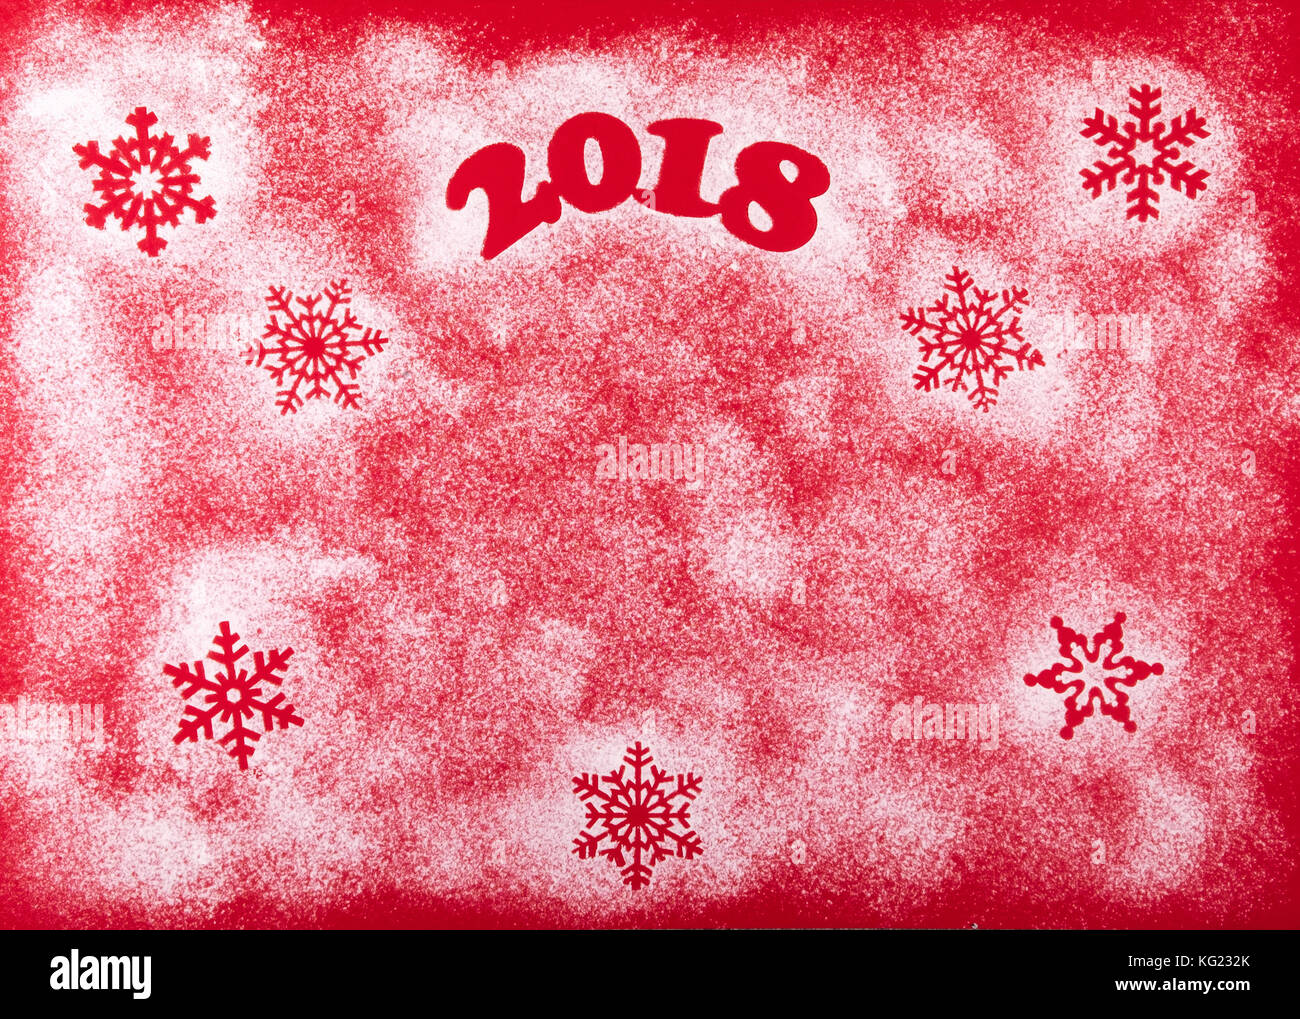 Natale felice anno nuovo holiday composizione su uno sfondo di colore rosso. vista superiore Foto Stock